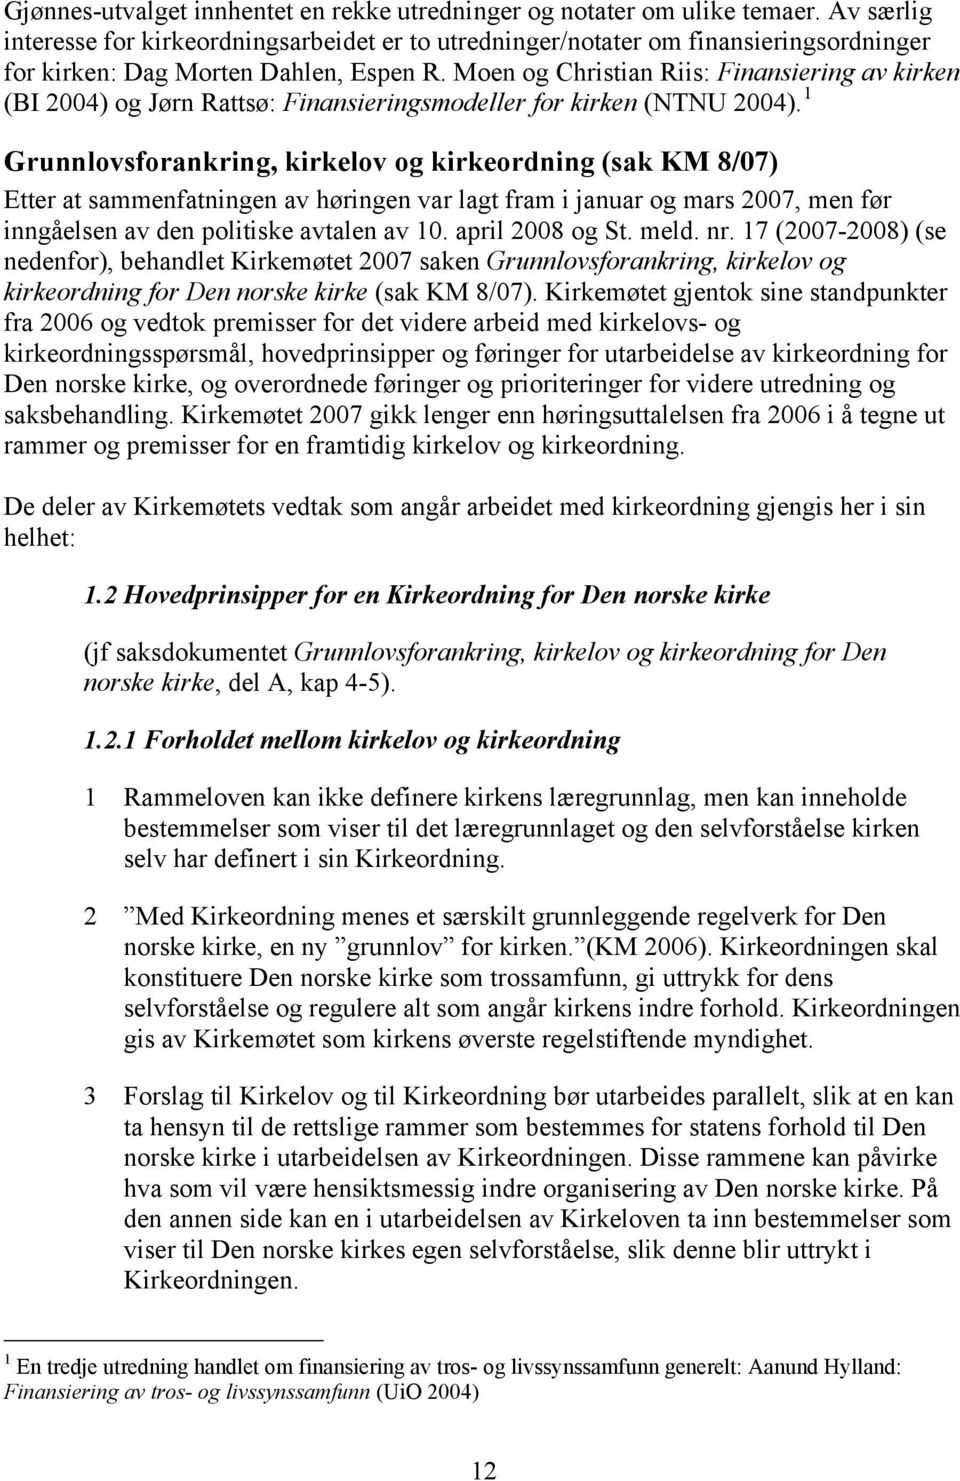 Moen og Christian Riis: Finansiering av kirken (BI 2004) og Jørn Rattsø: Finansieringsmodeller for kirken (NTNU 2004).